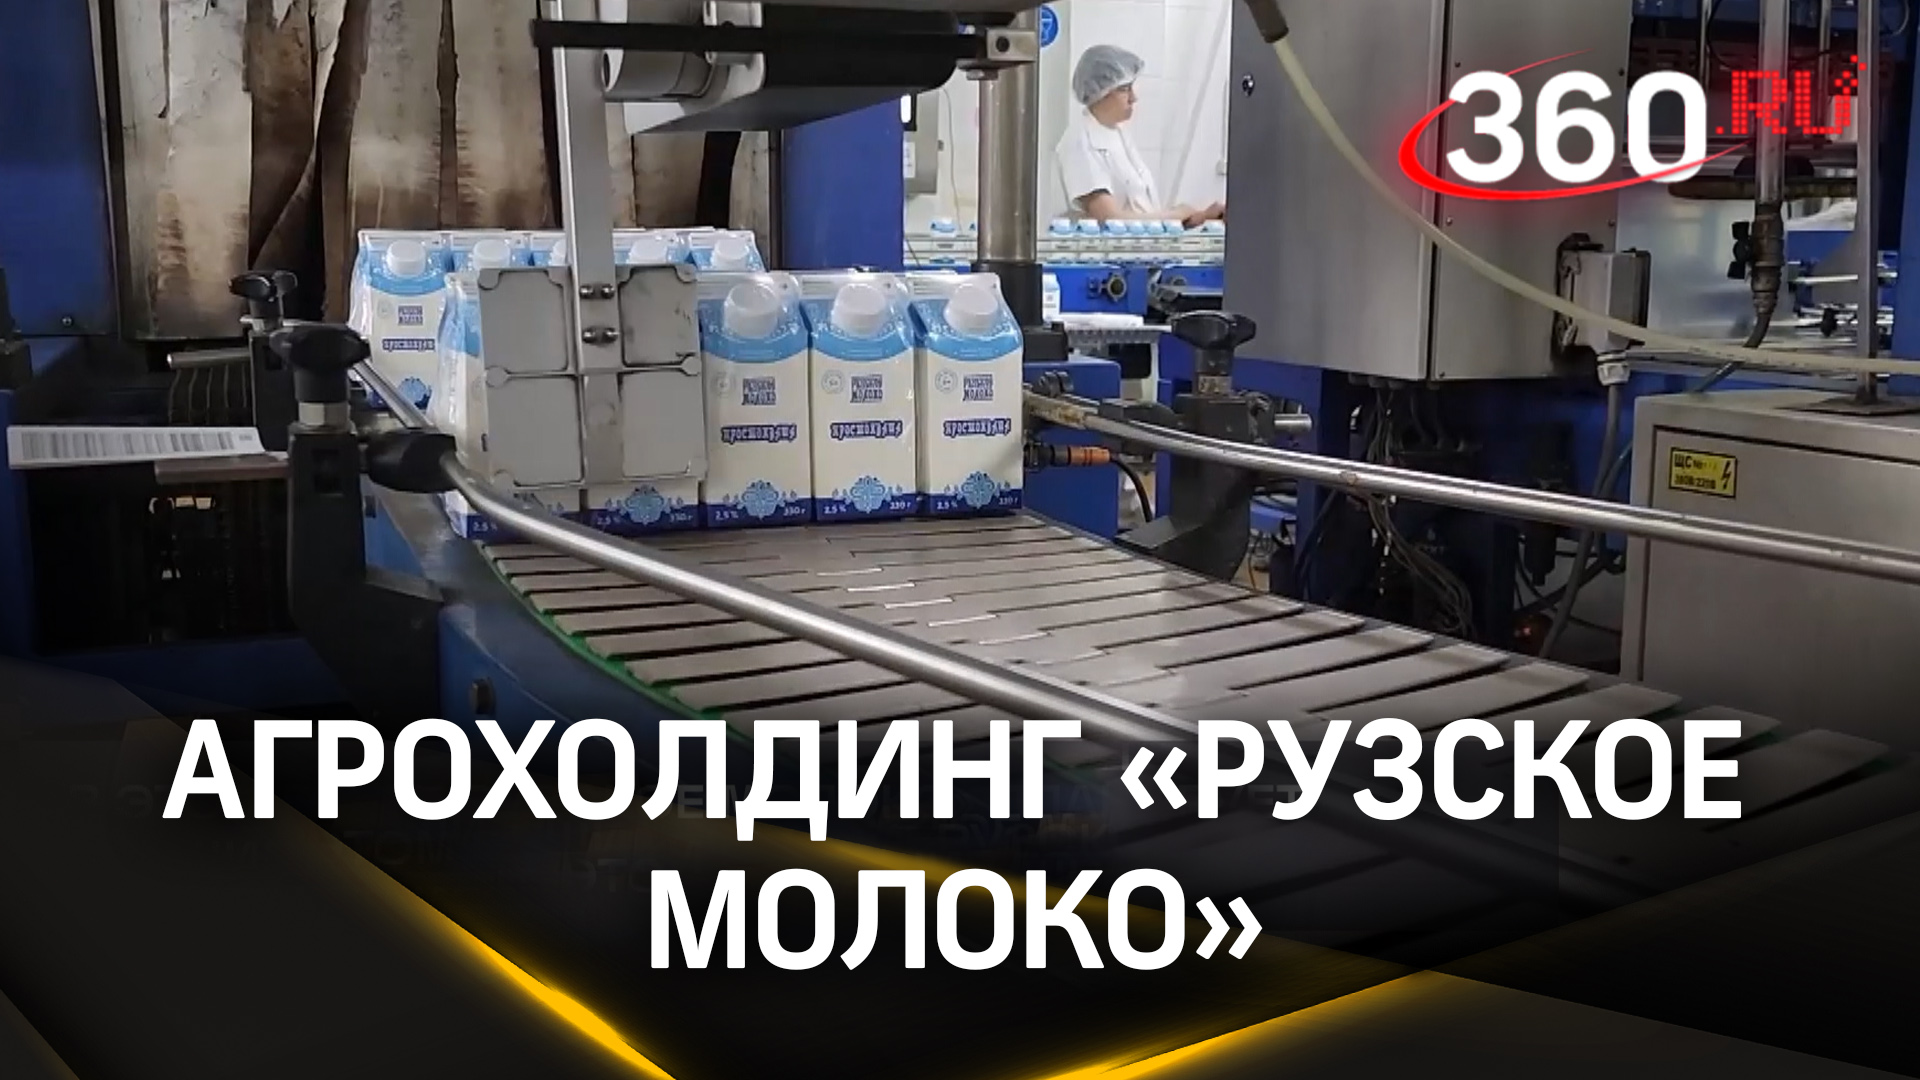 Агрохолдинг «Рузское молоко» закончил посевную кампанию